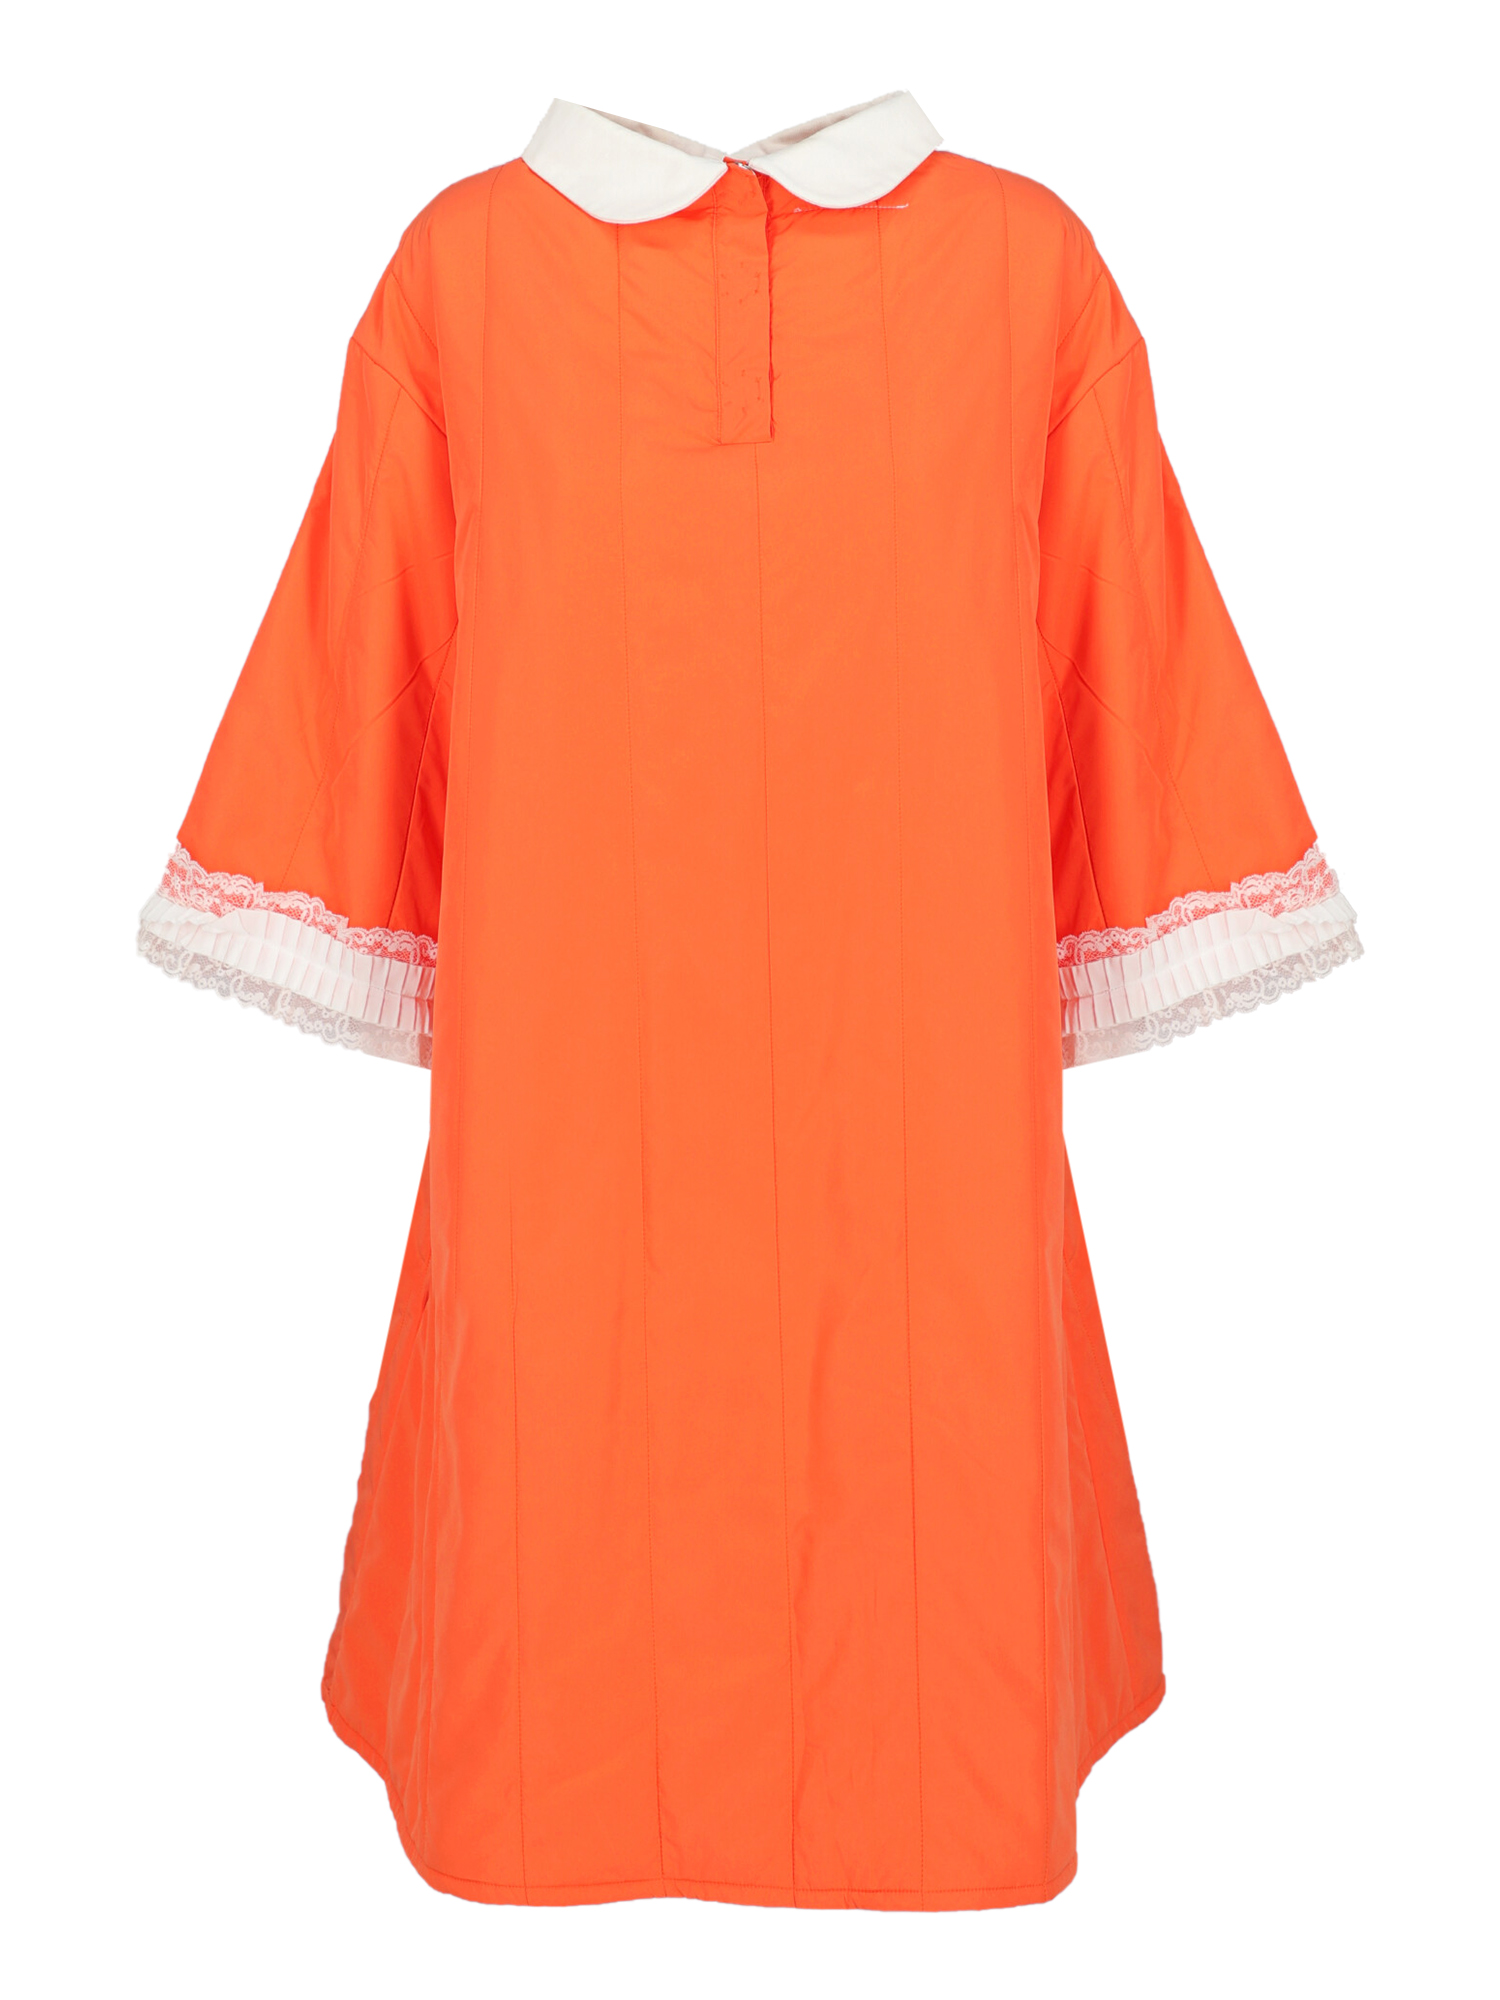 Mm6 Maison Margiela Femme Robes Orange Fabric